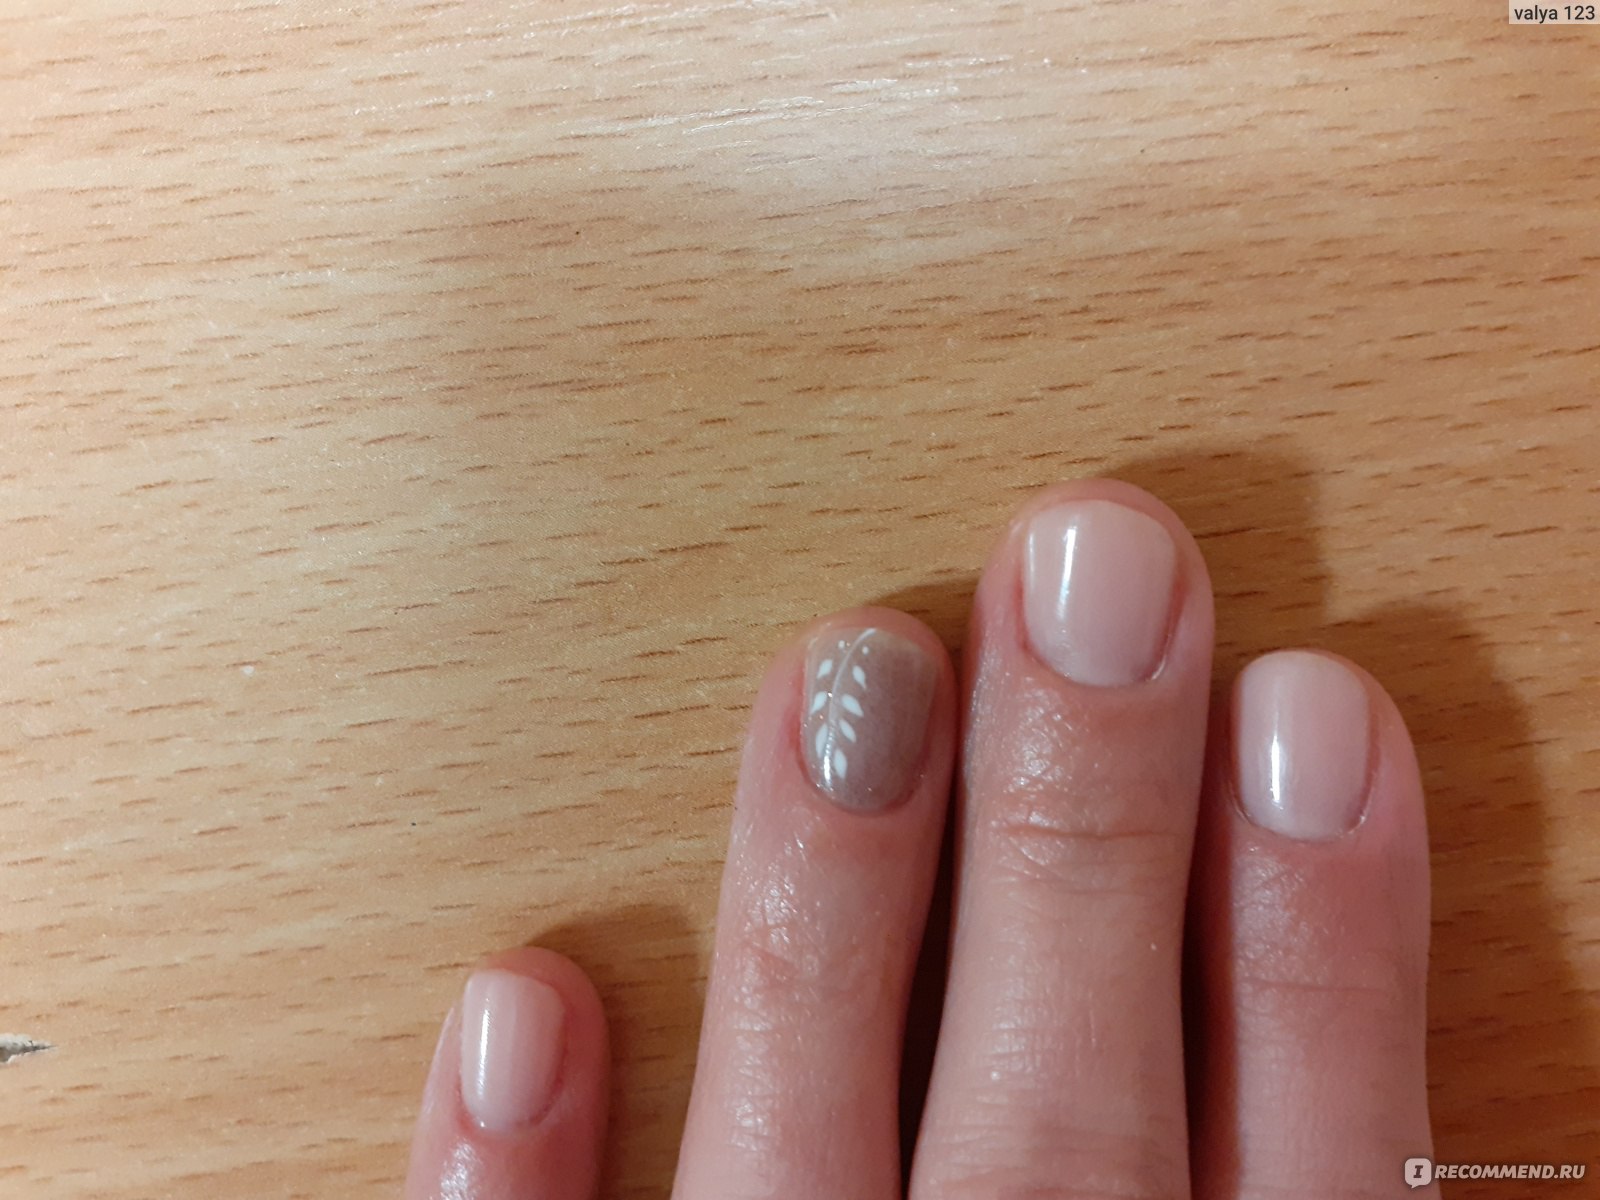 Почему гель-лак плохо держится на ногтях, как это предотвратить?